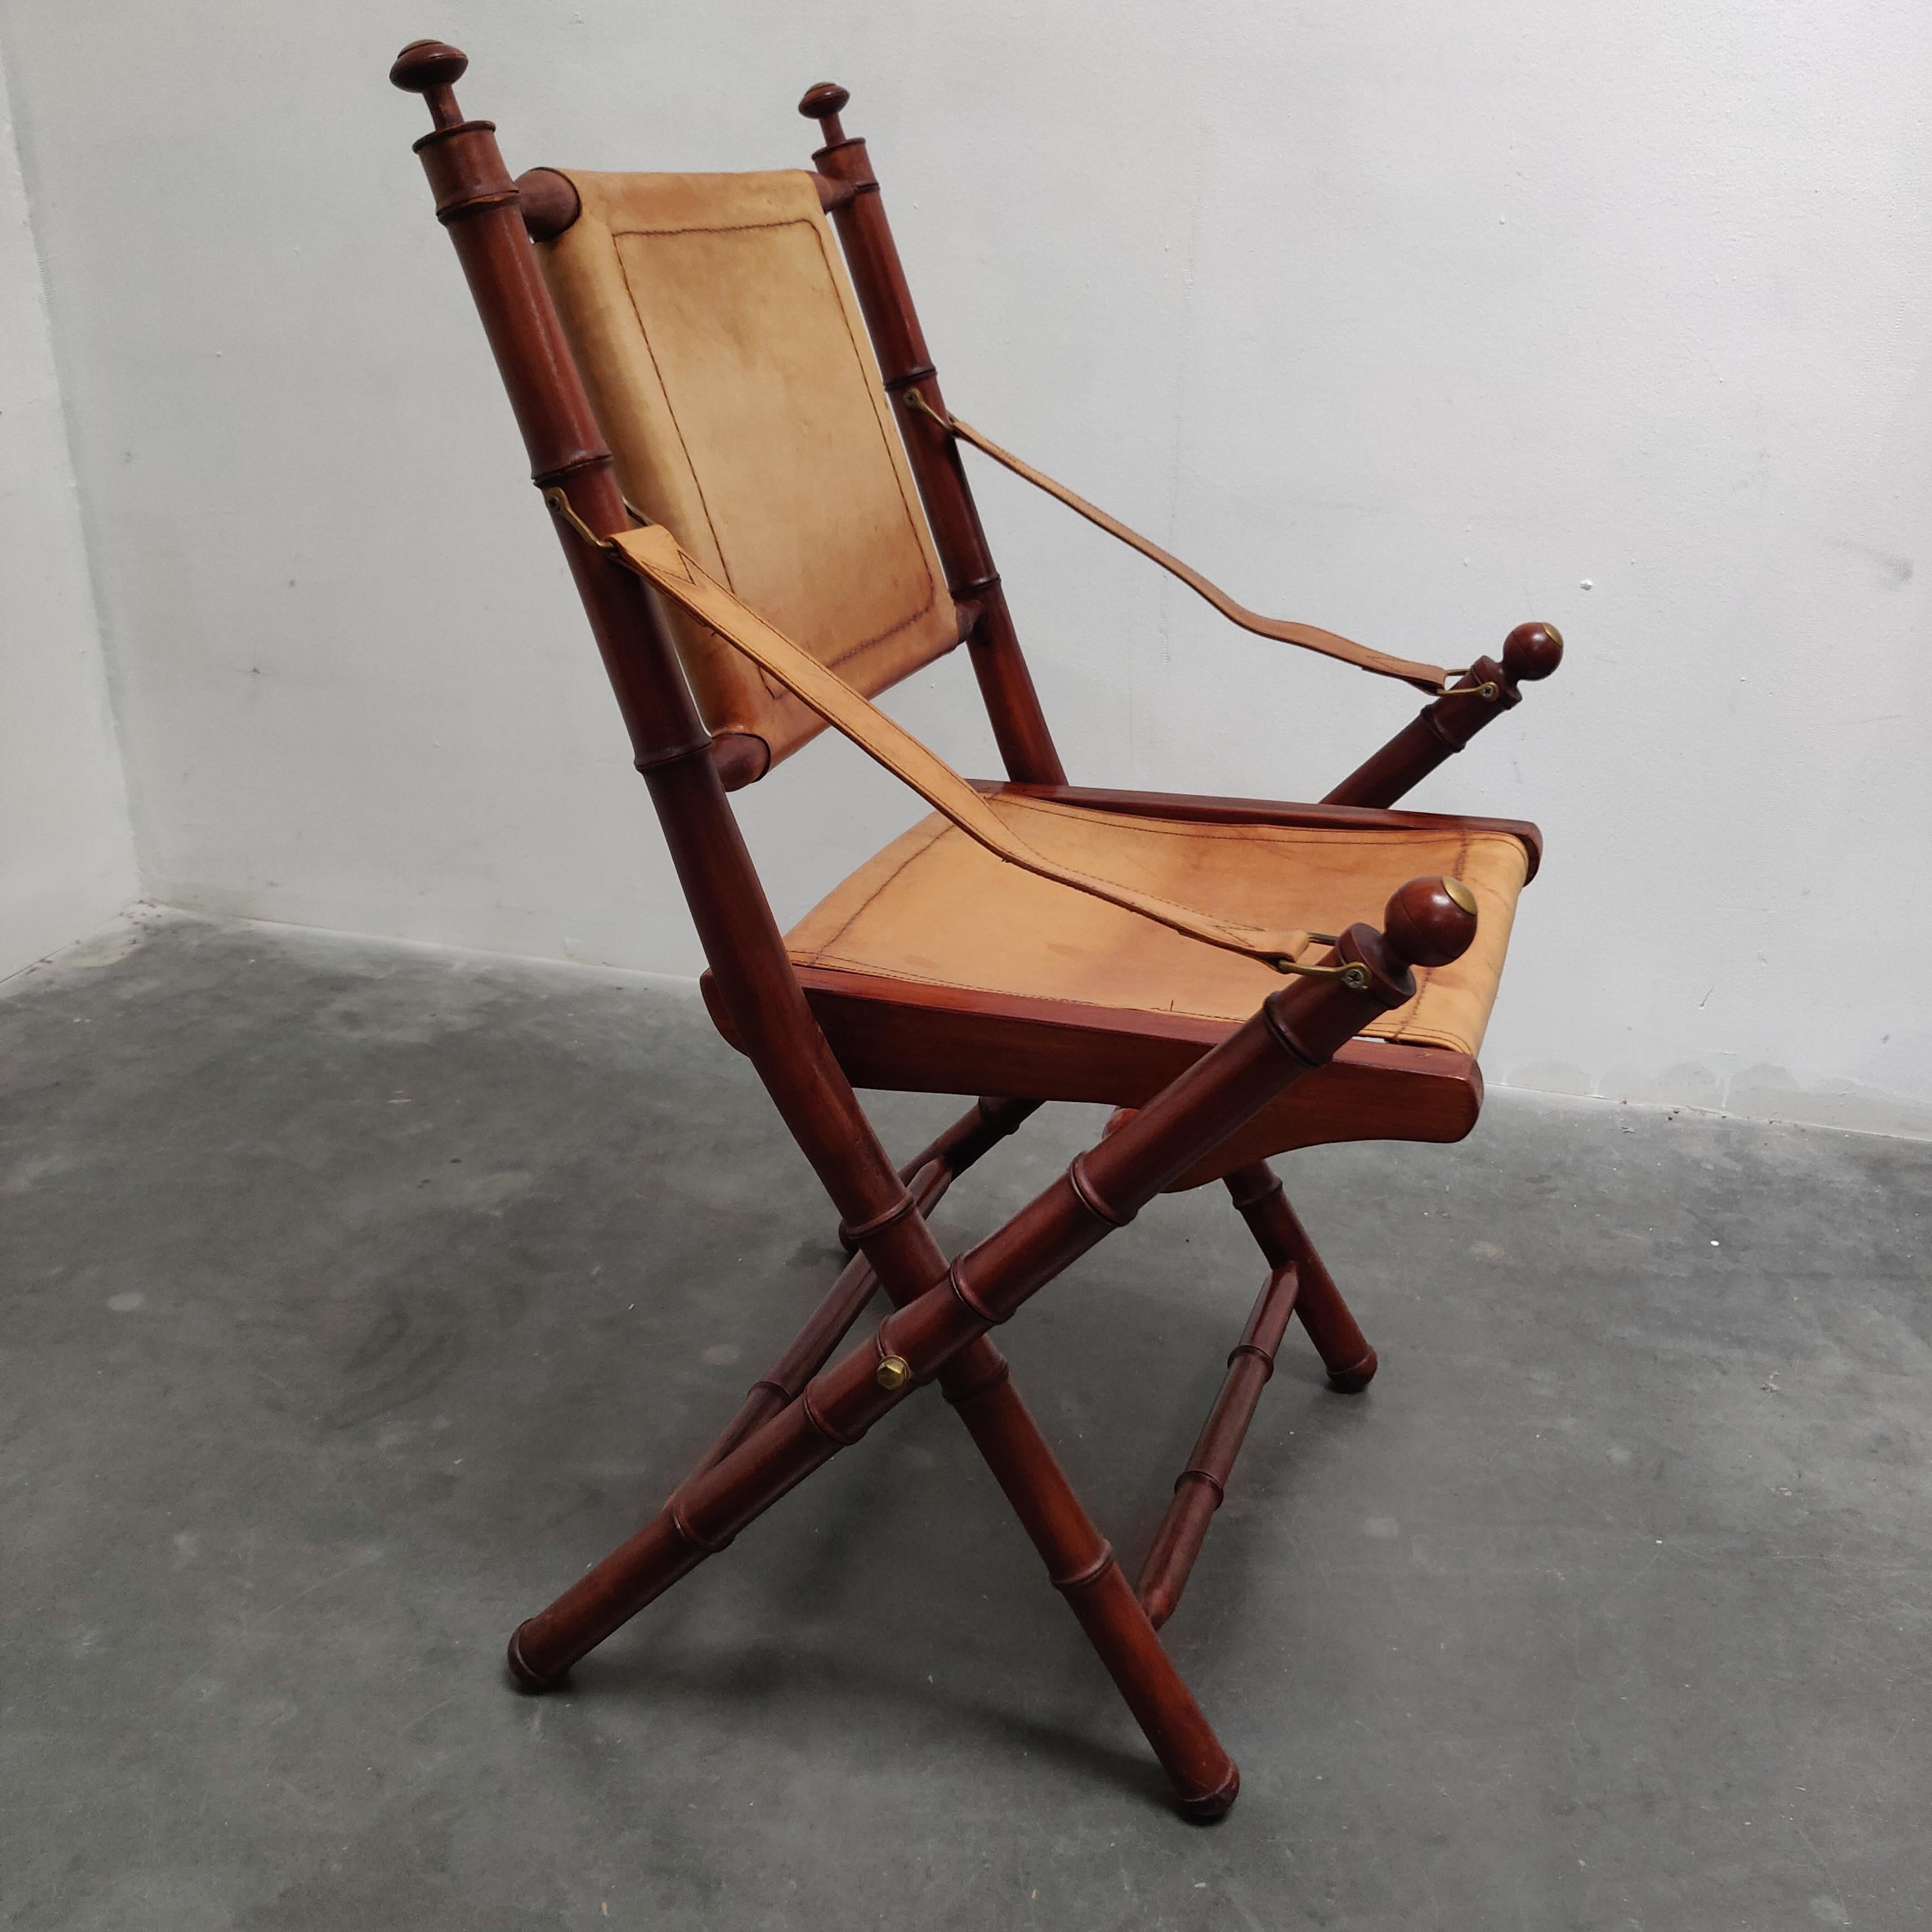 Chaise pliante d'officier colonial britannique en faux bambou et cuir, datant du milieu du siècle dernier.
Faux bambou de fabrication artisanale, quincaillerie en laiton et dossier, assise et accoudoirs en cuir surpiqué.

AA#210461